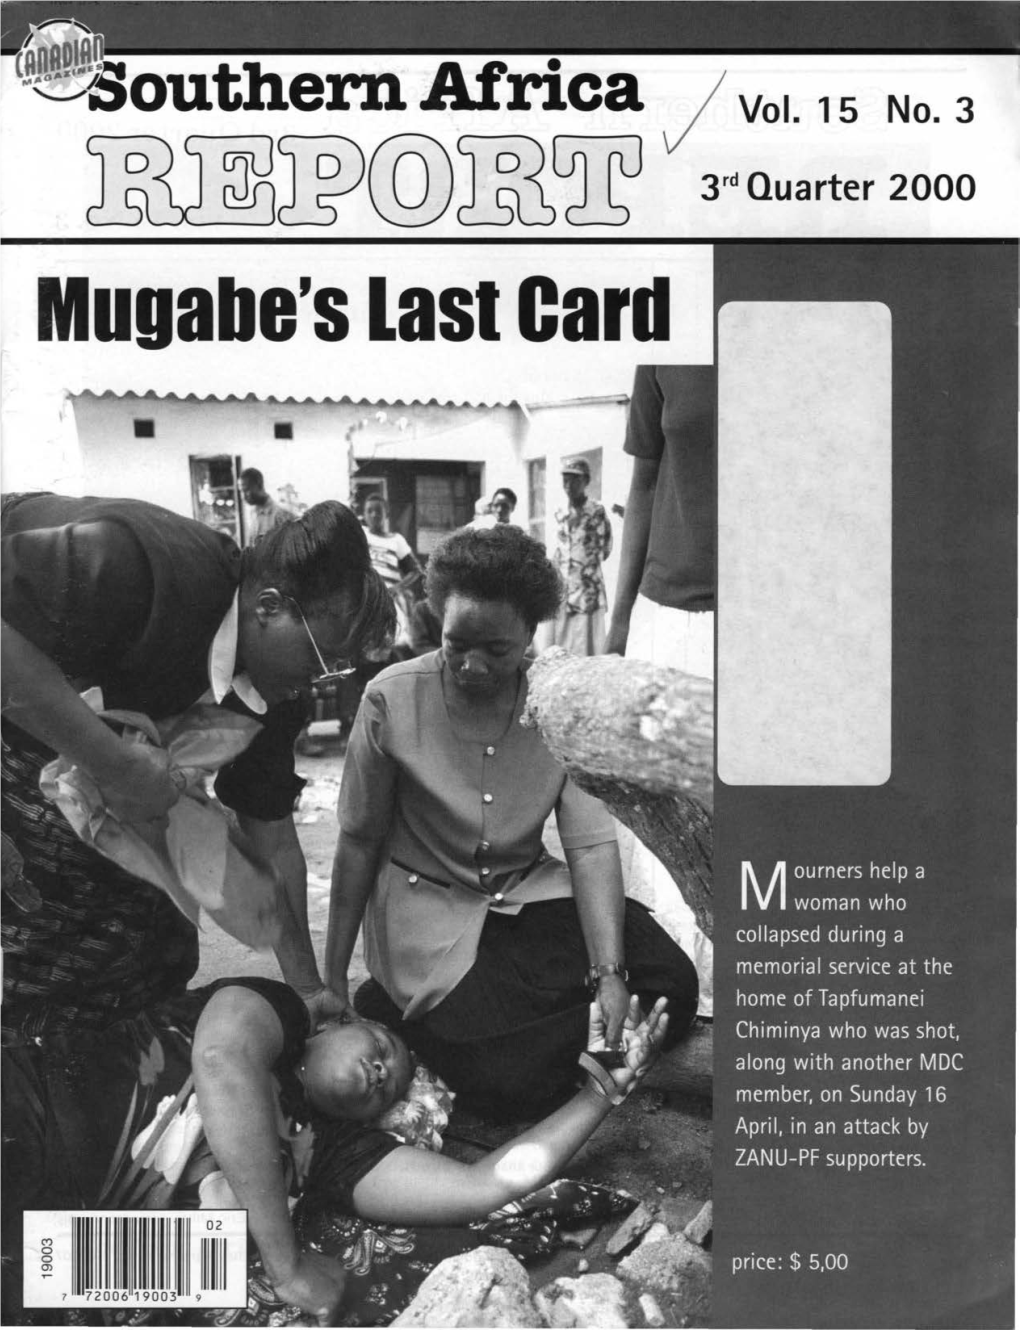 Mugabe's Last Card ~(QJ@~Thl®Jrdlli ~~Jrit©@J 3Rd Quarter 2000 REPORT Vol